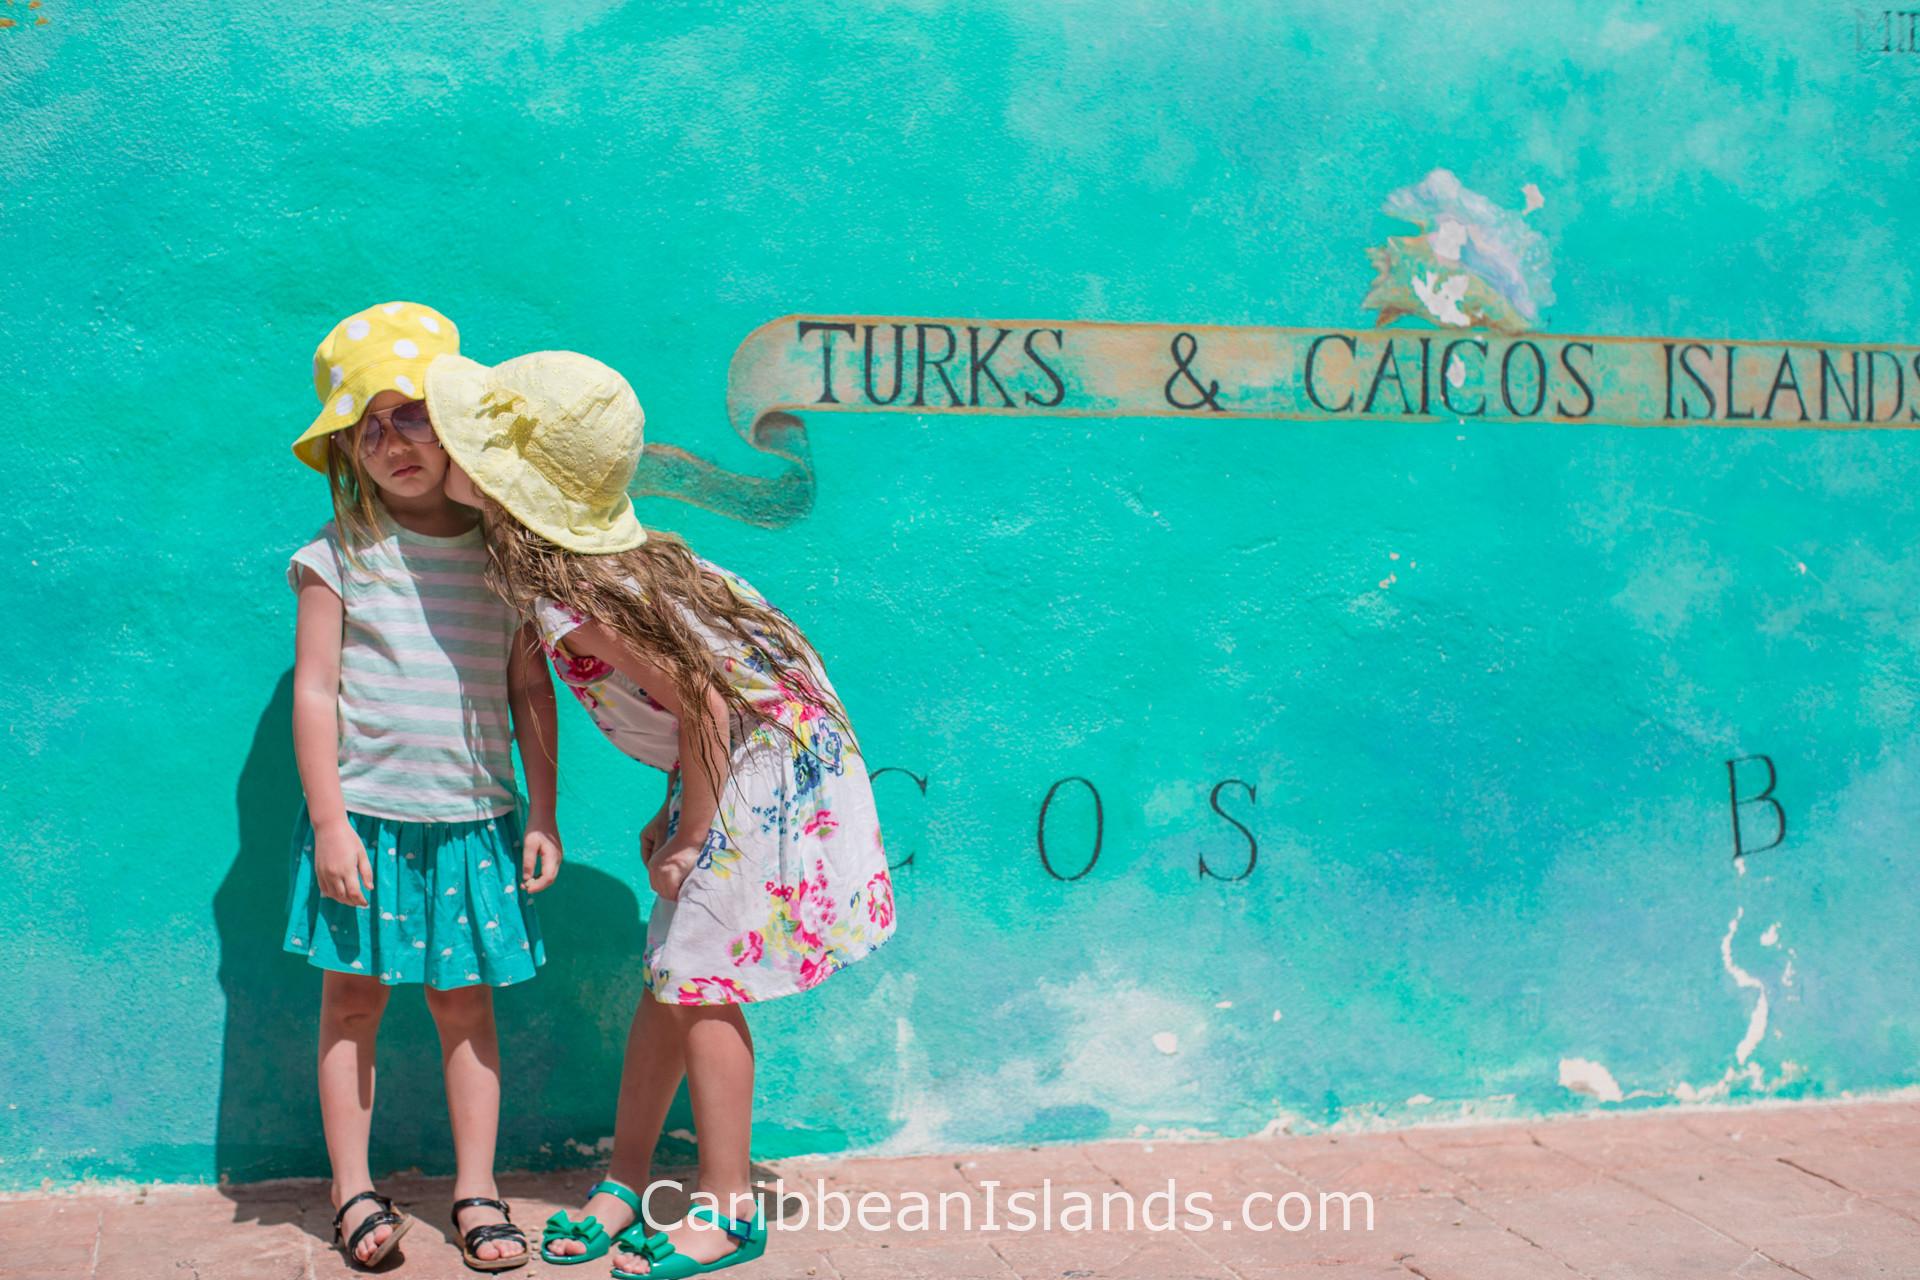 Turks & Caicos, Caribbean